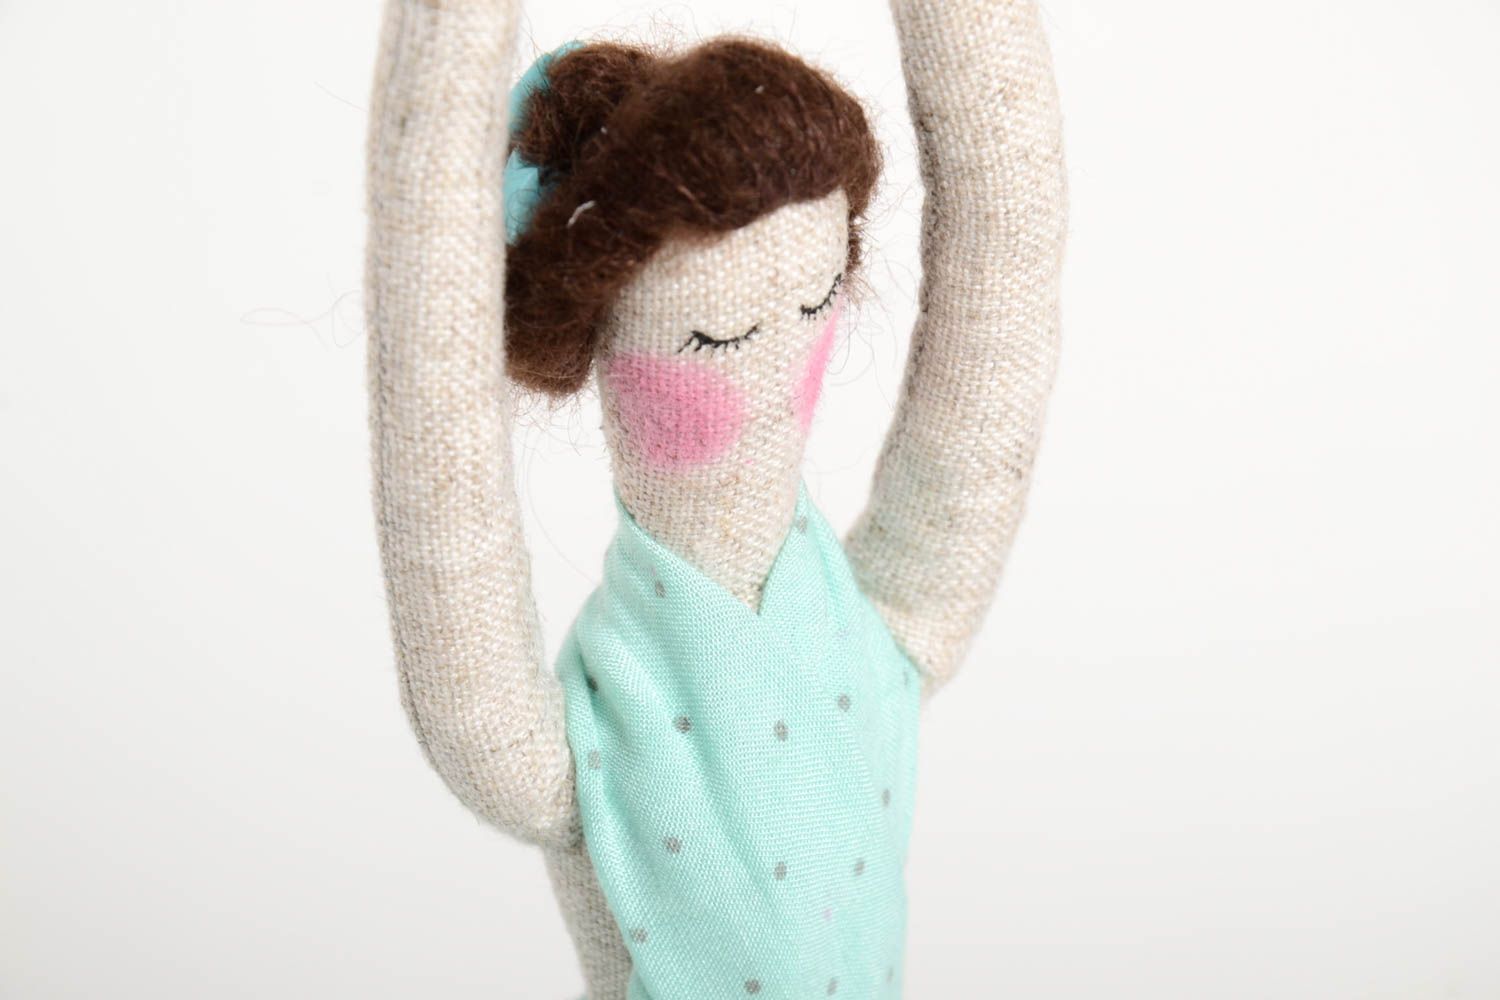 Muñeca de autor hecha a mano con soporte souvenir original juguete decorativo foto 2